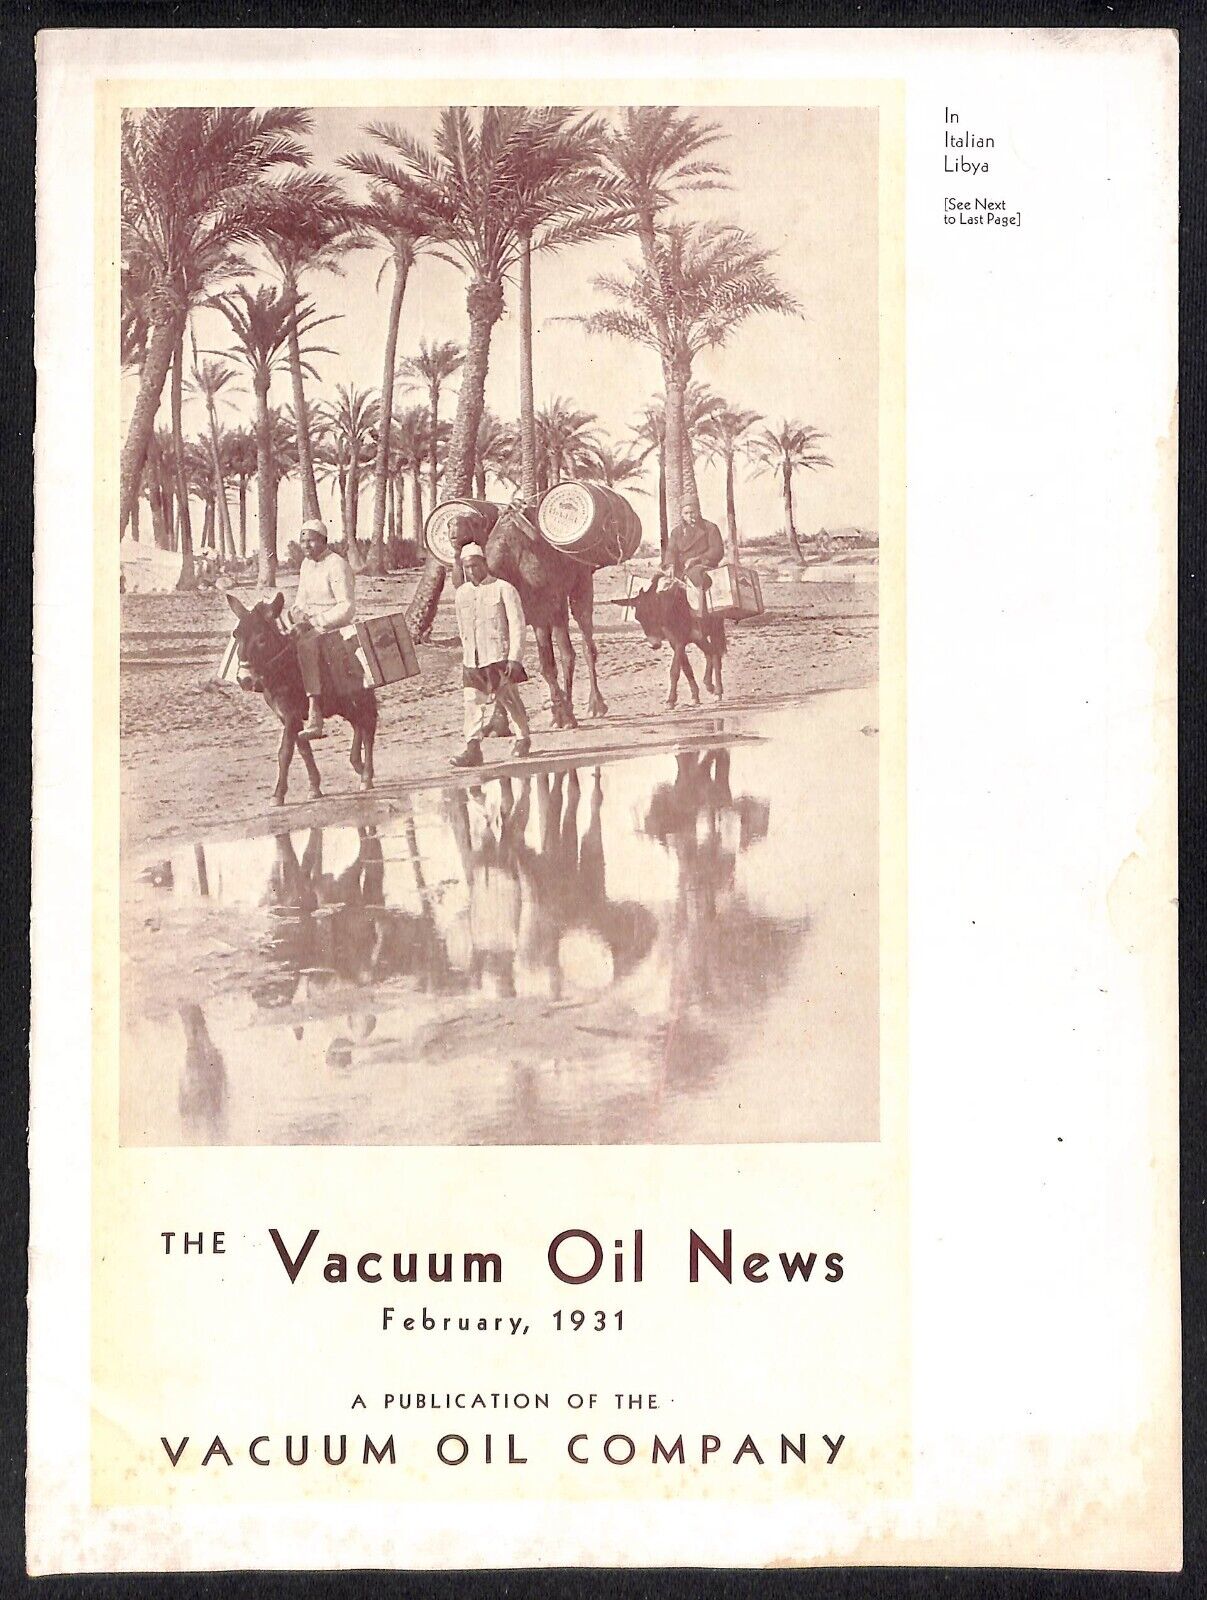 Vacuum Oil News Mobiloil Mobil Oil Gargoyle February 1931 16pp. Scarce - VGC